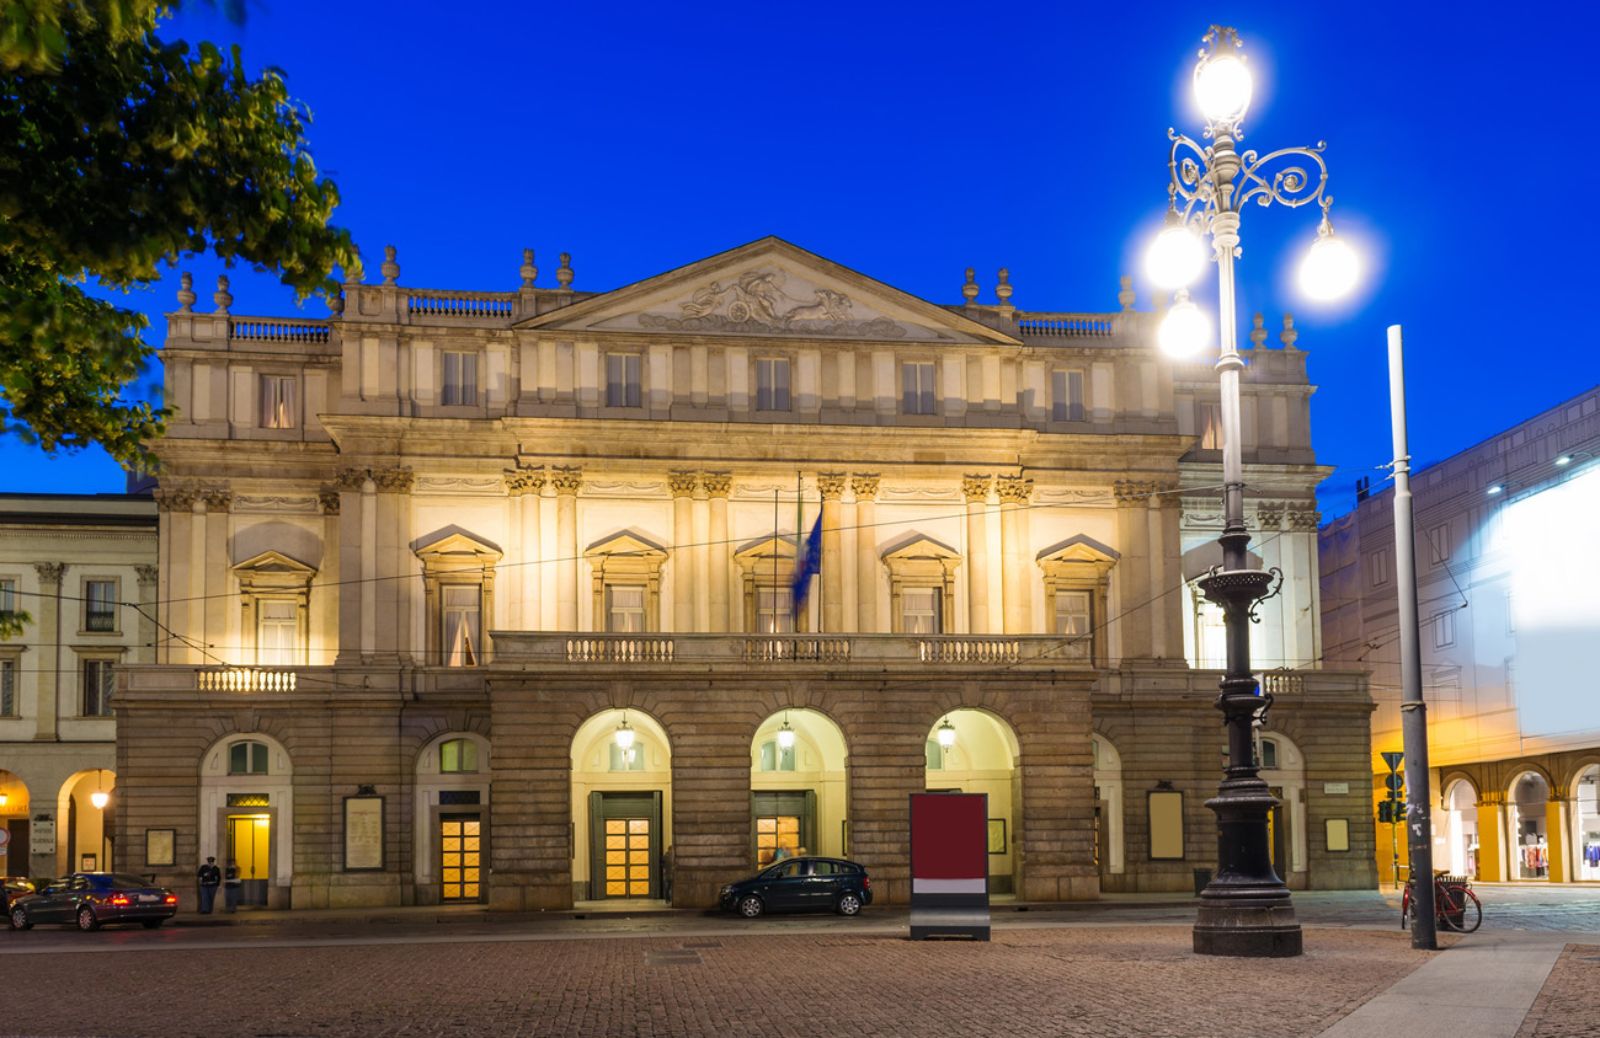 Visitare Milano: il Teatro alla Scala, tempio della lirica